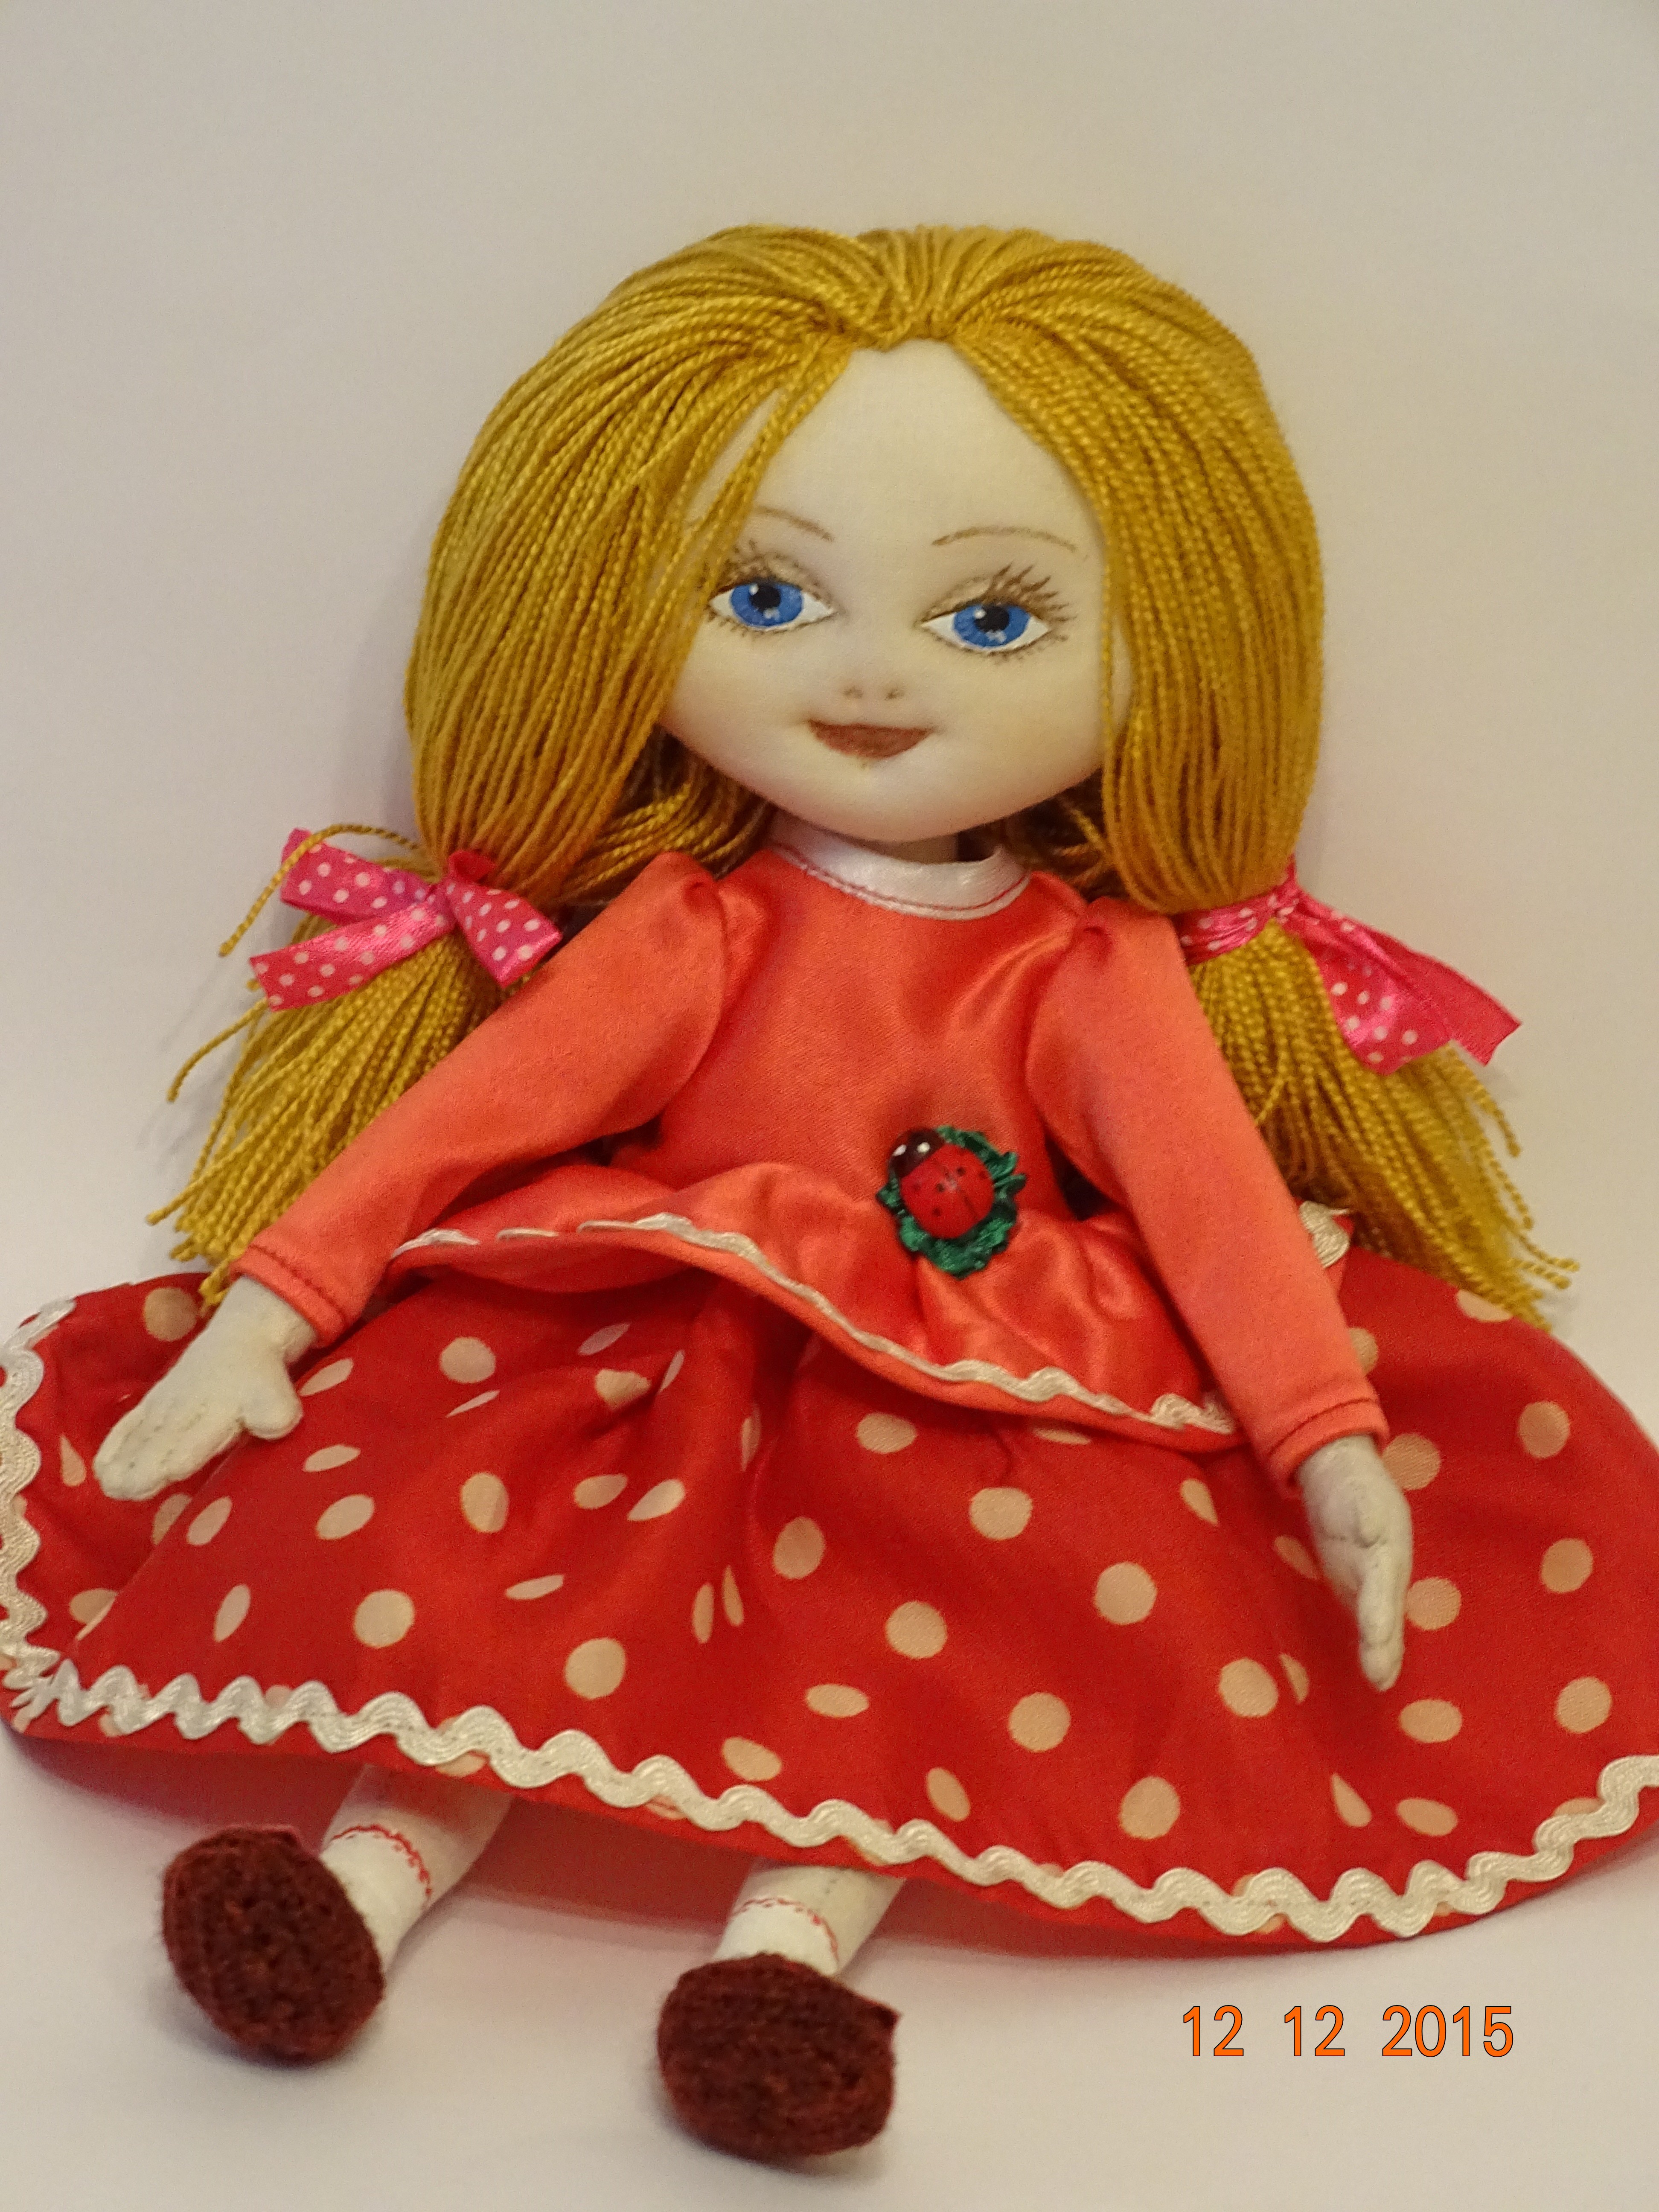 Текстильная кукла с нарисованным лицом @golubinii / textille dolls handmade Instagram @golubinii